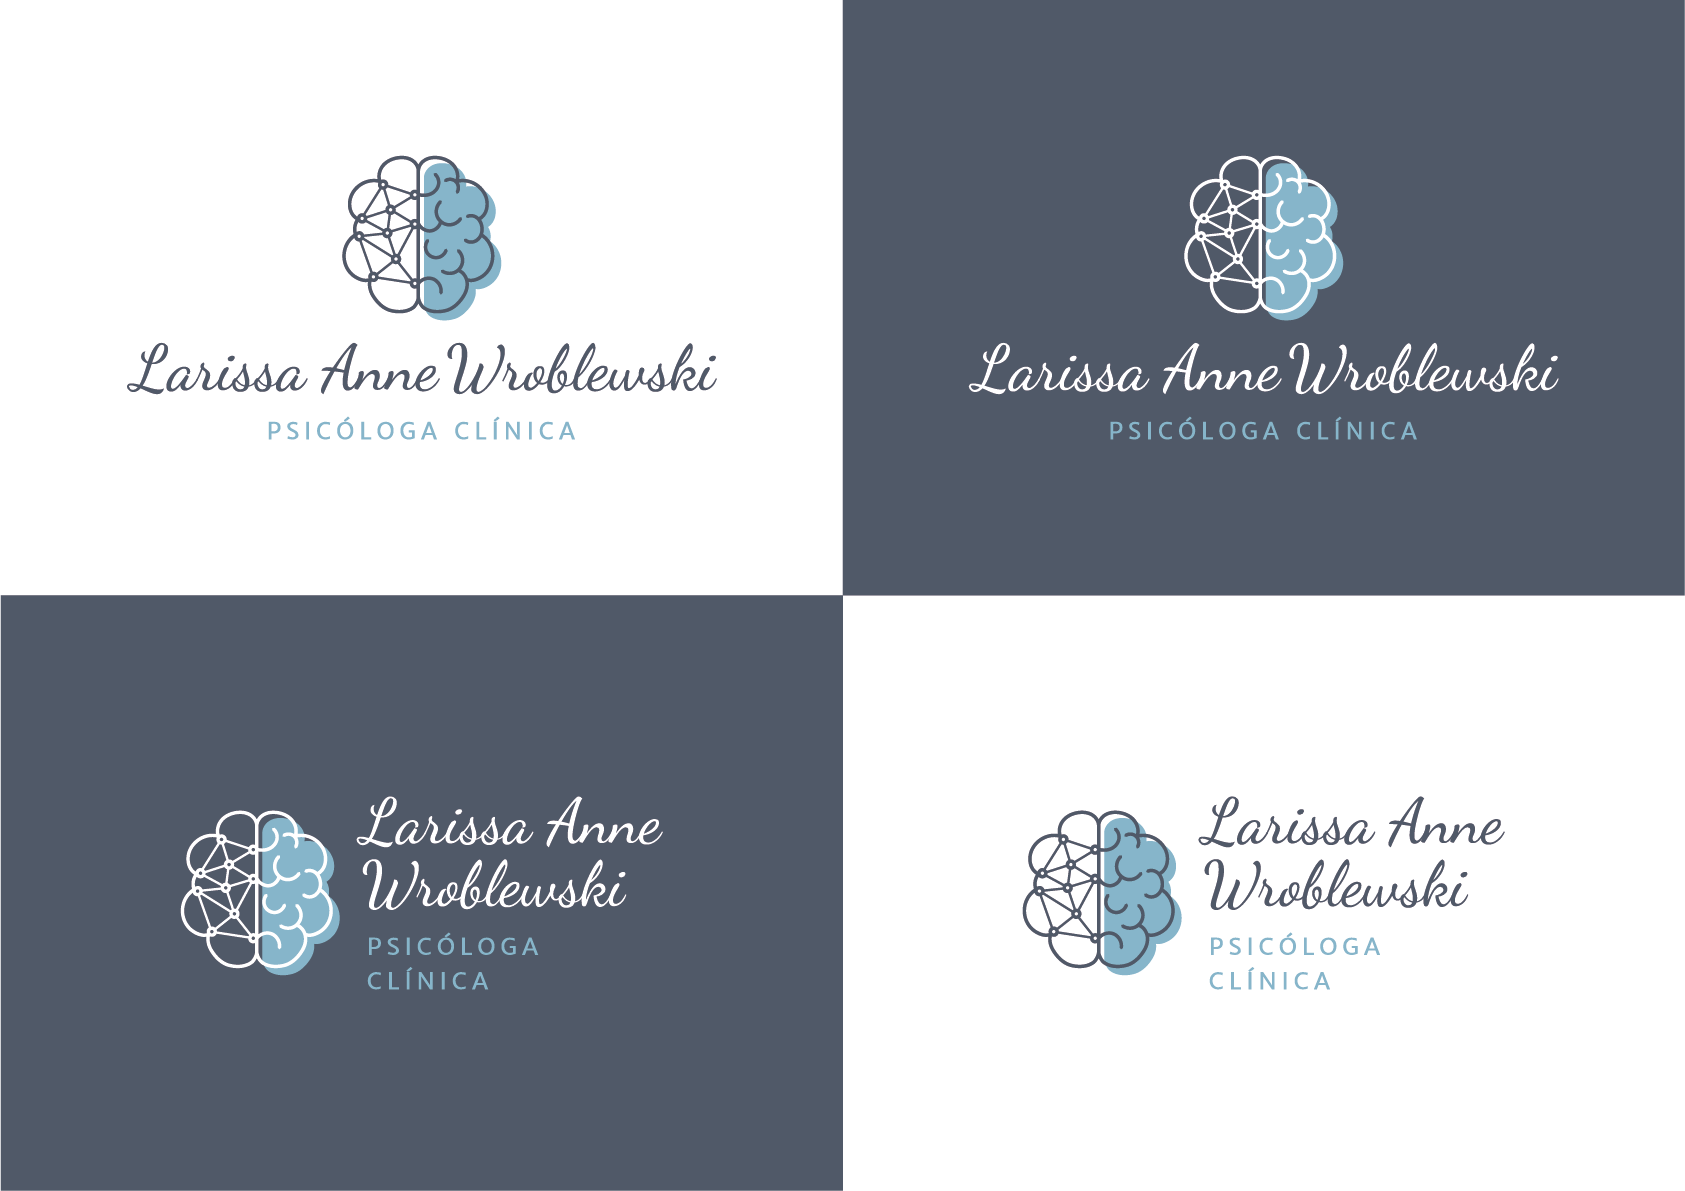 Criação da marca para a psicóloga clínica Larissa Anne Wroblewski, por Cristiano Valim